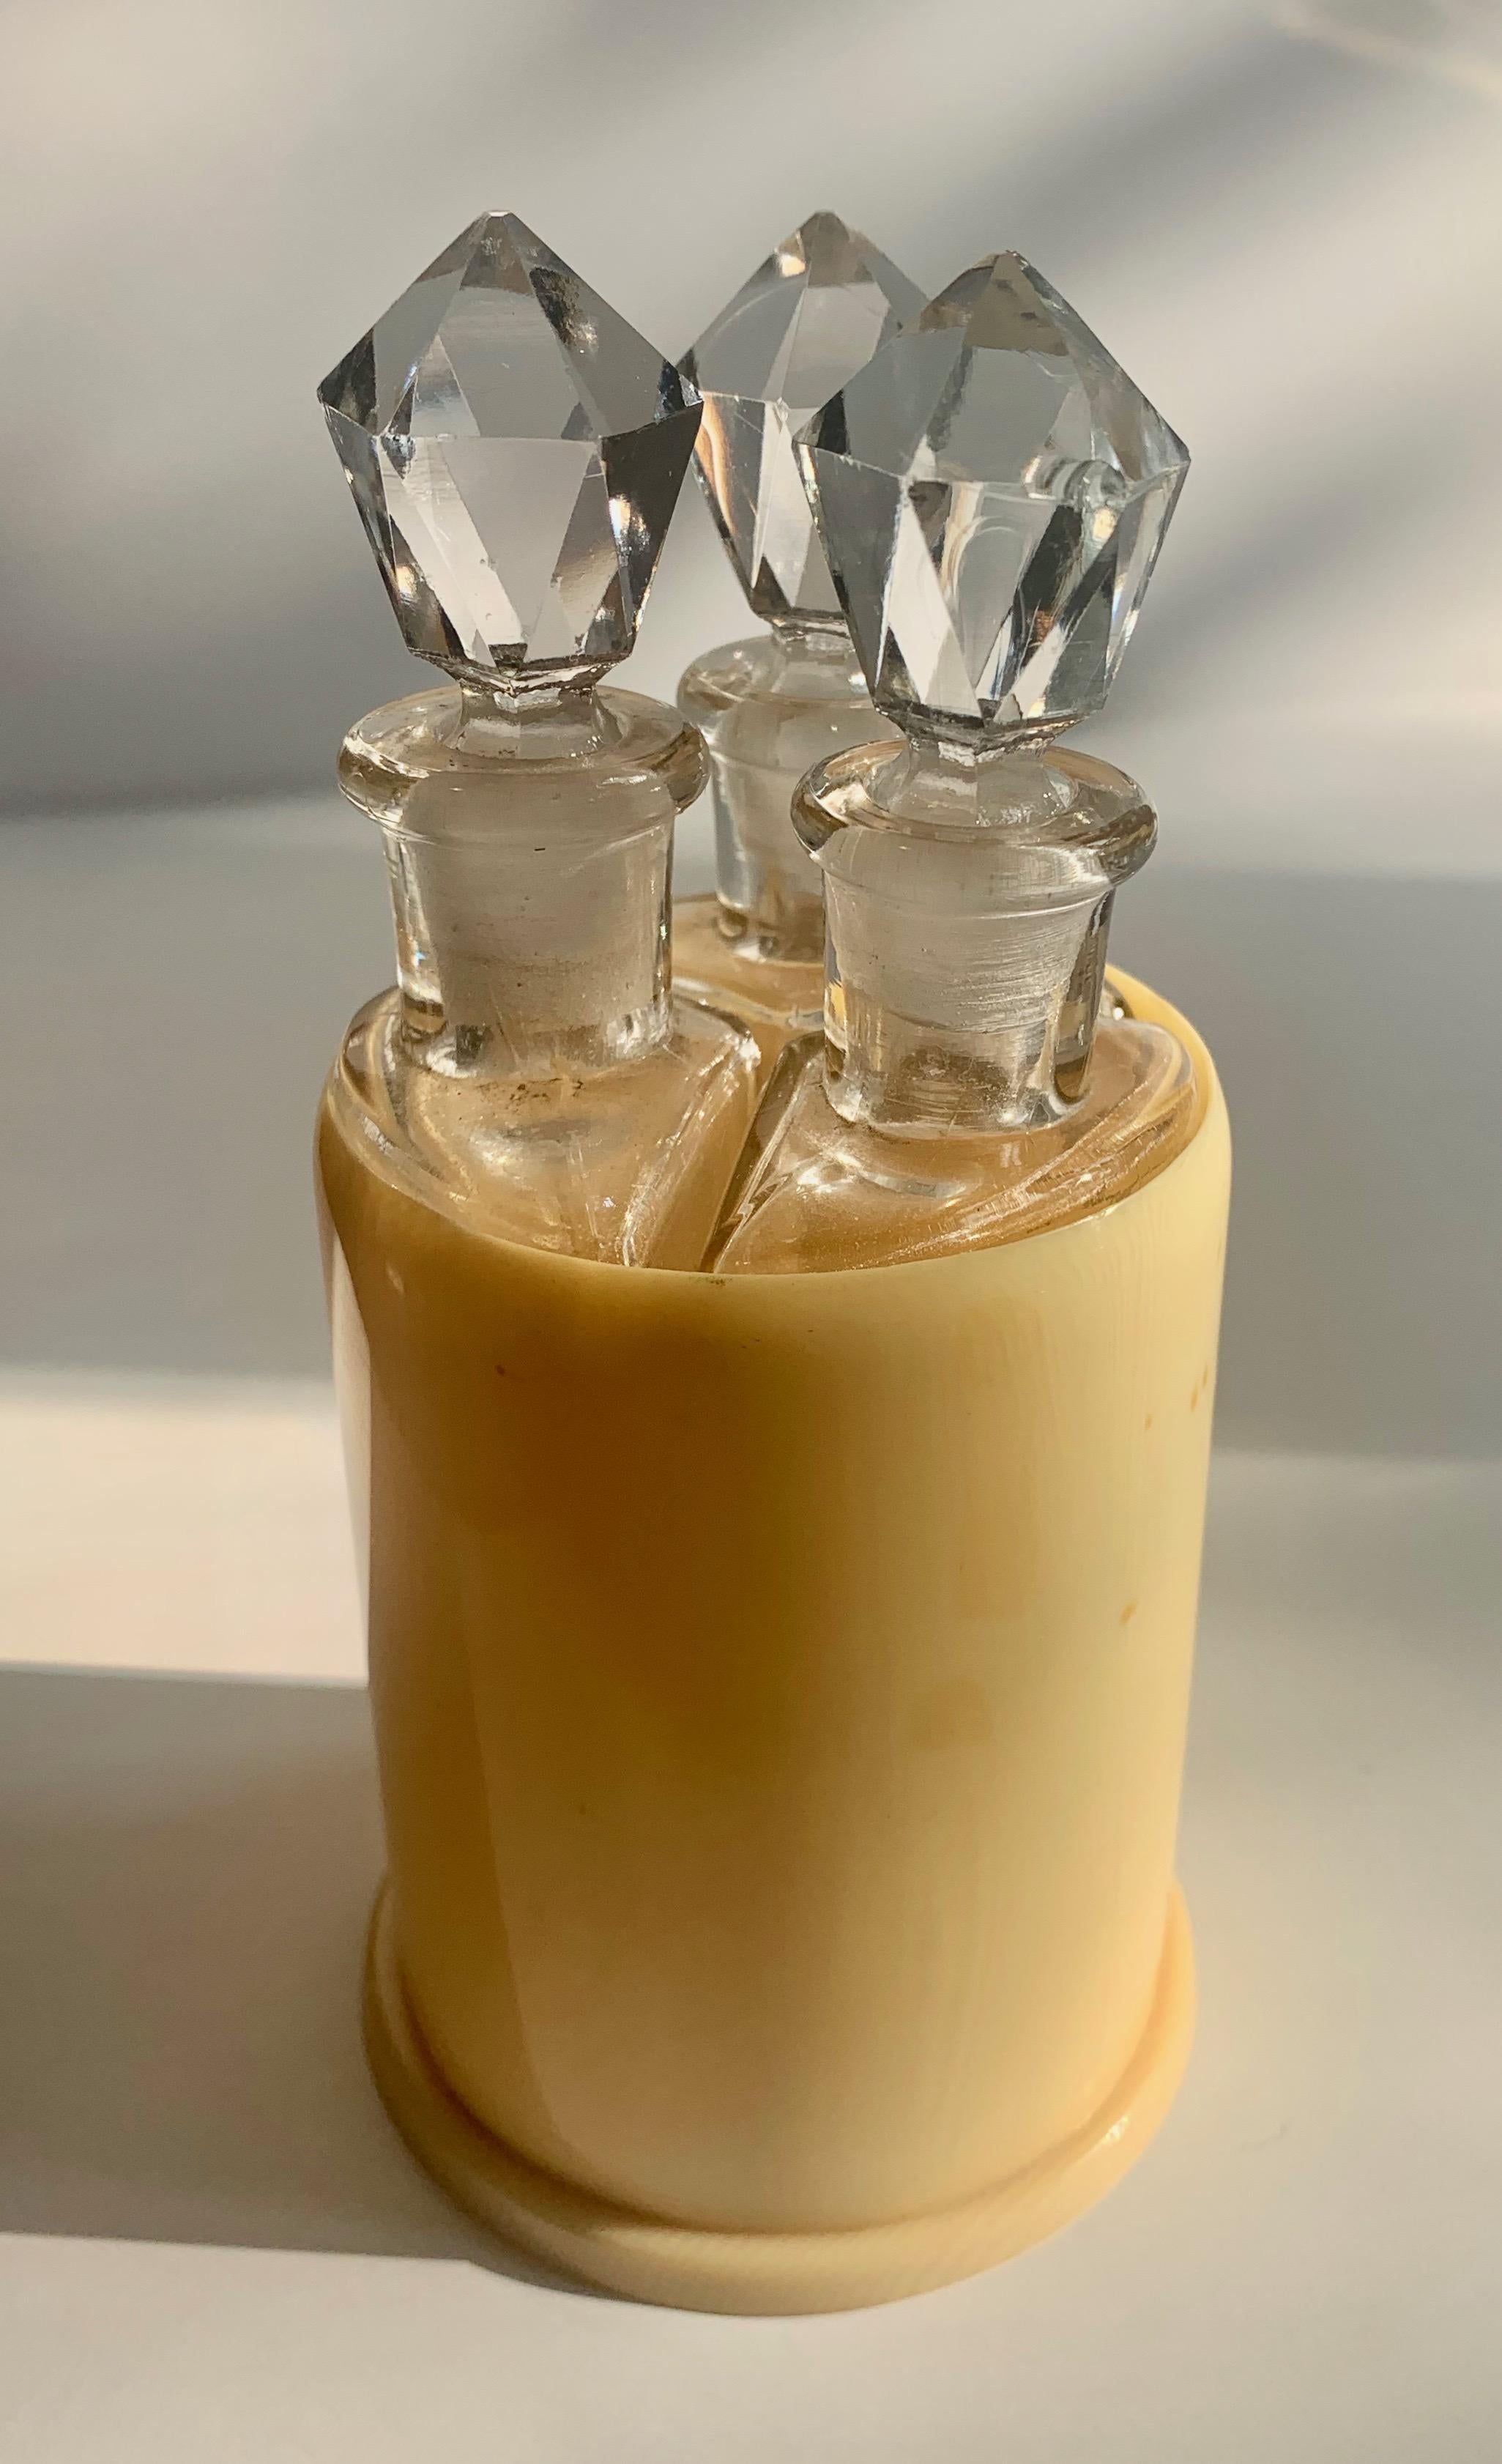 Set de trois bouteilles dans un support - trois bouteilles uniques de forme triangulaire avec des bouchons en cristal dans un support rond. Le trio est parfait pour les parfums, ou comme porte- extrait dans la cuisine gastronomique.